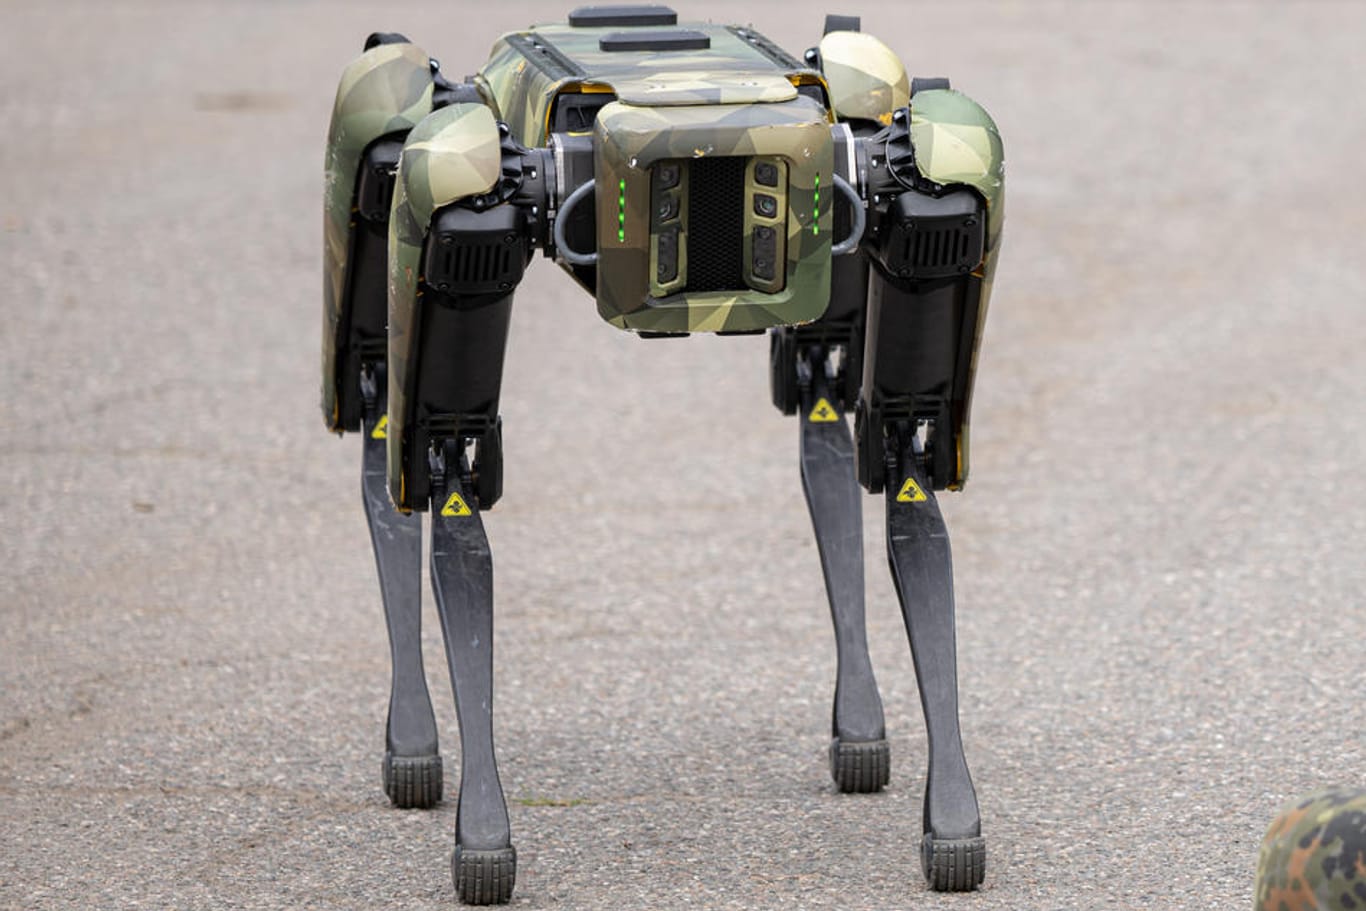 Der Roboterhund trägt den Namen "Wolfgang 001" und könnte im Einsatz Bilder liefern.